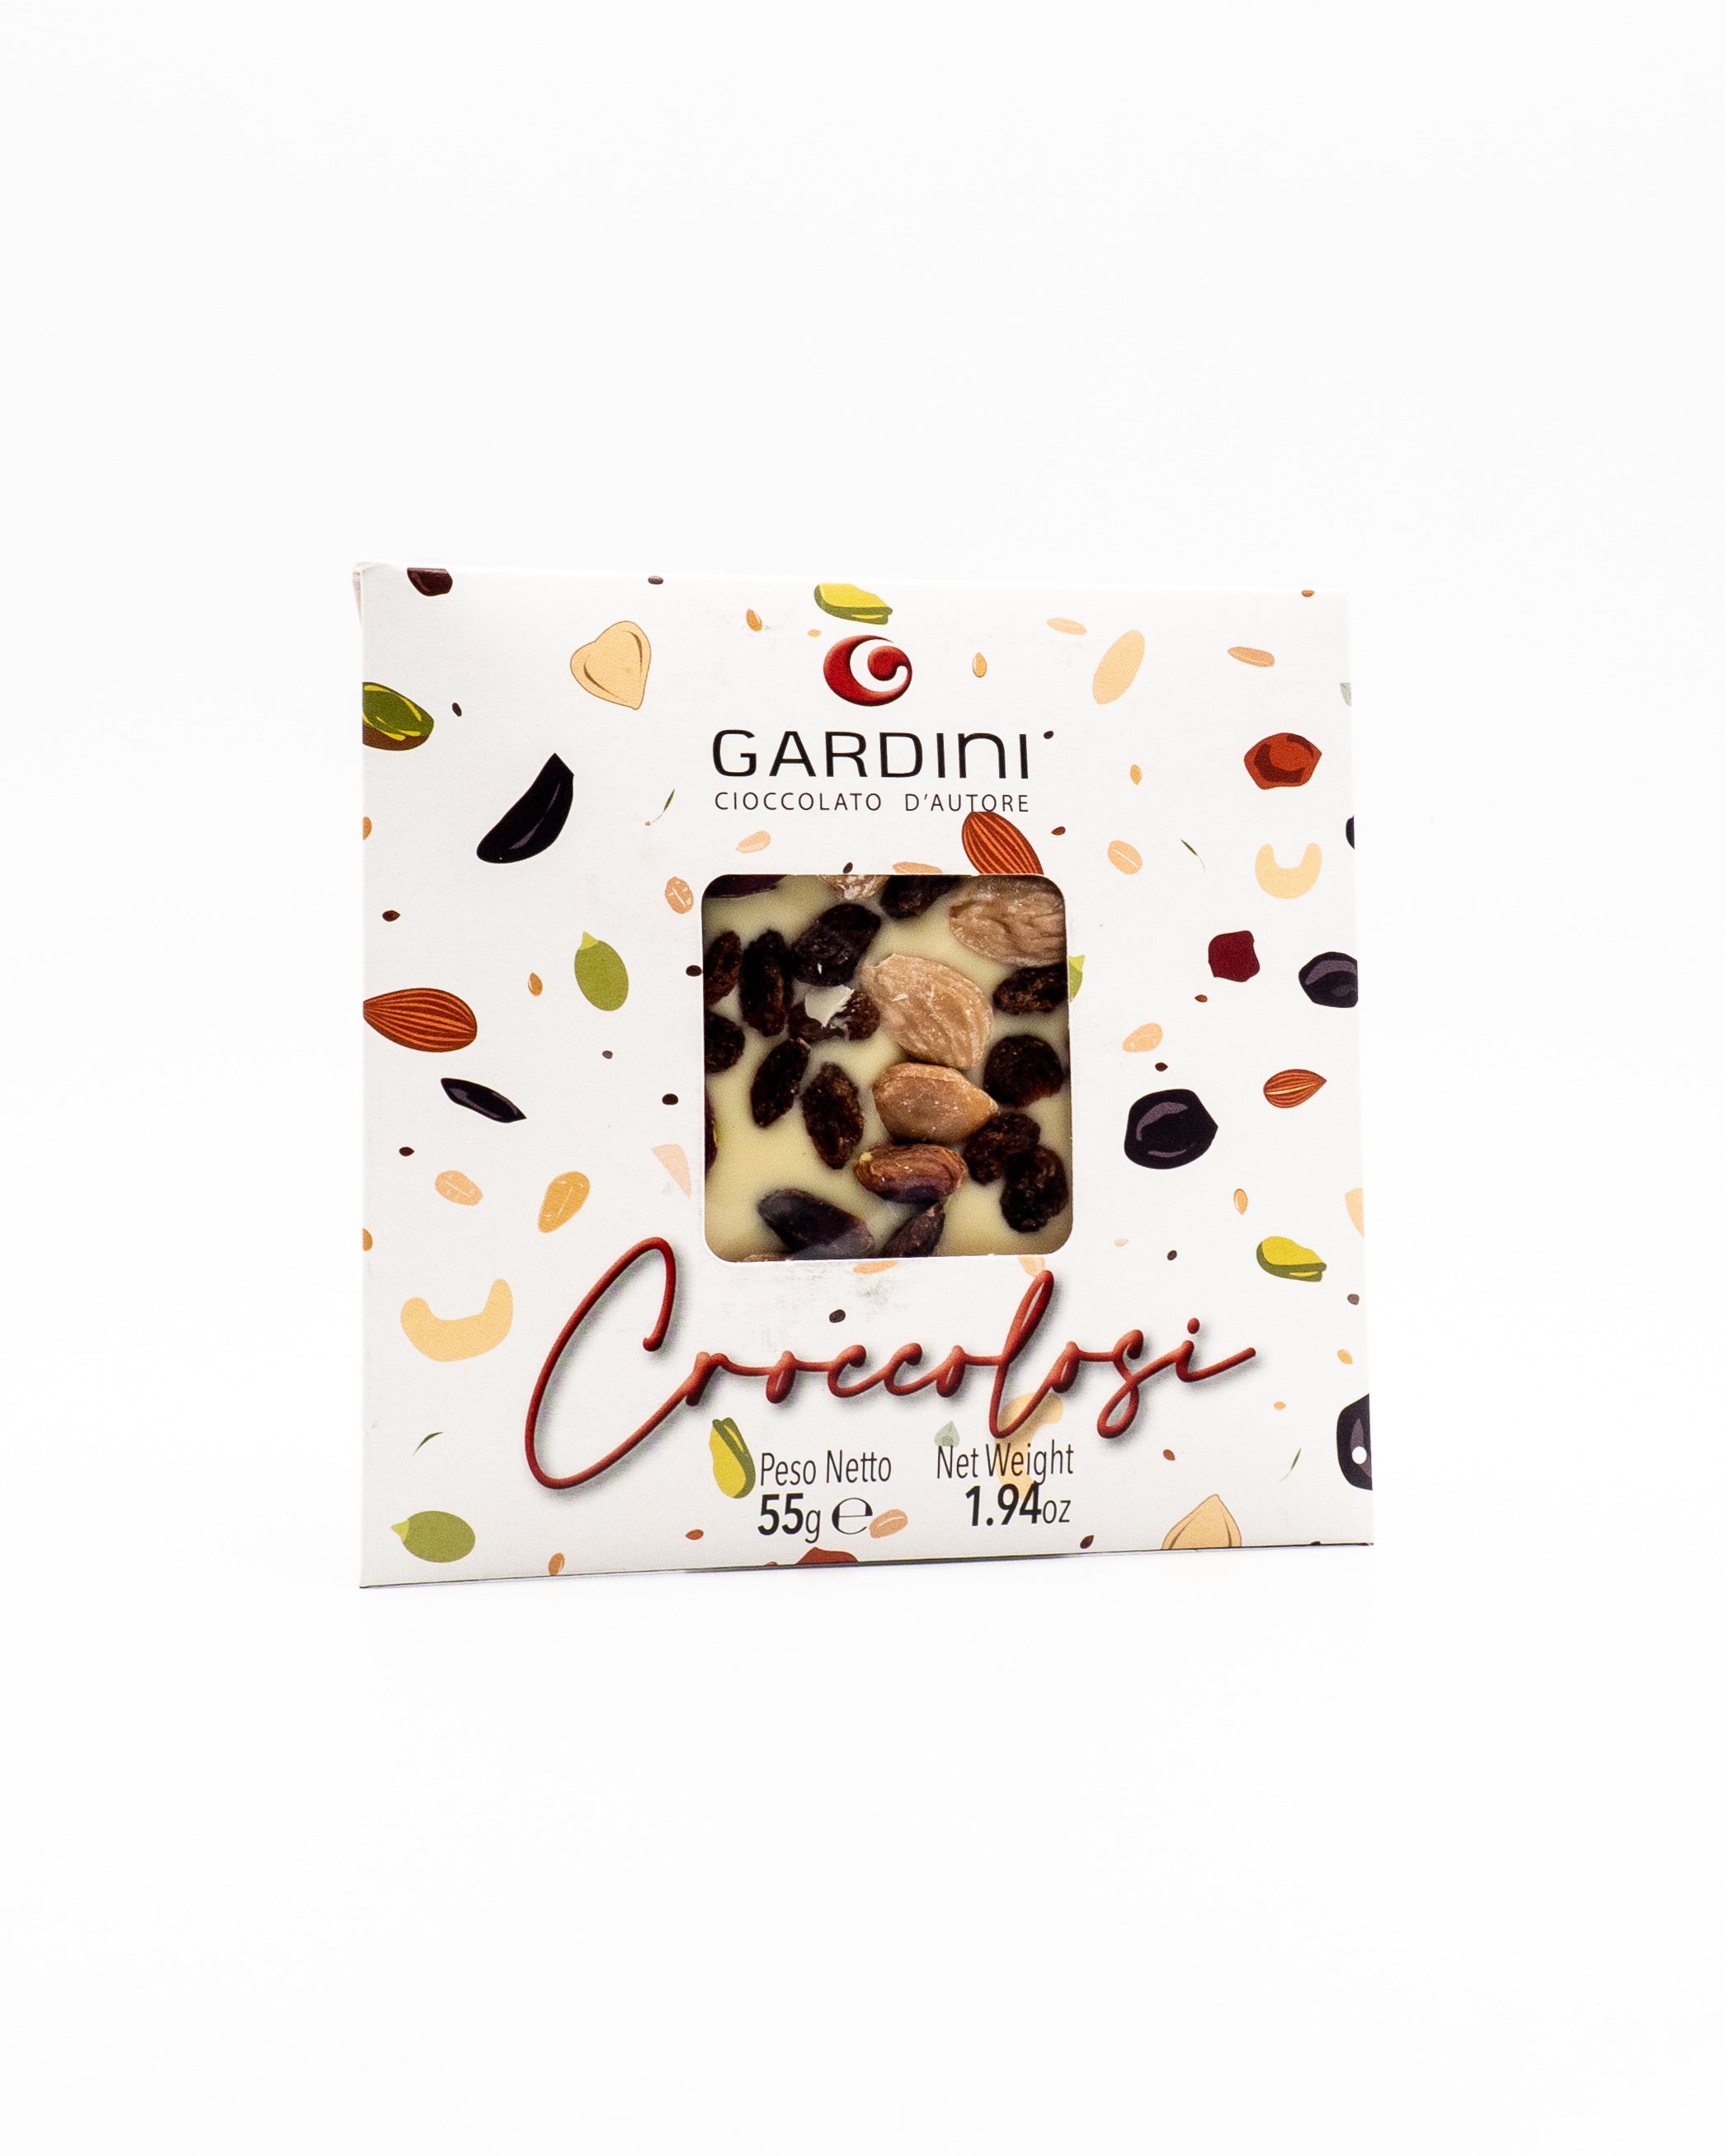 Croccoloso cioccolato bianco - Gardini